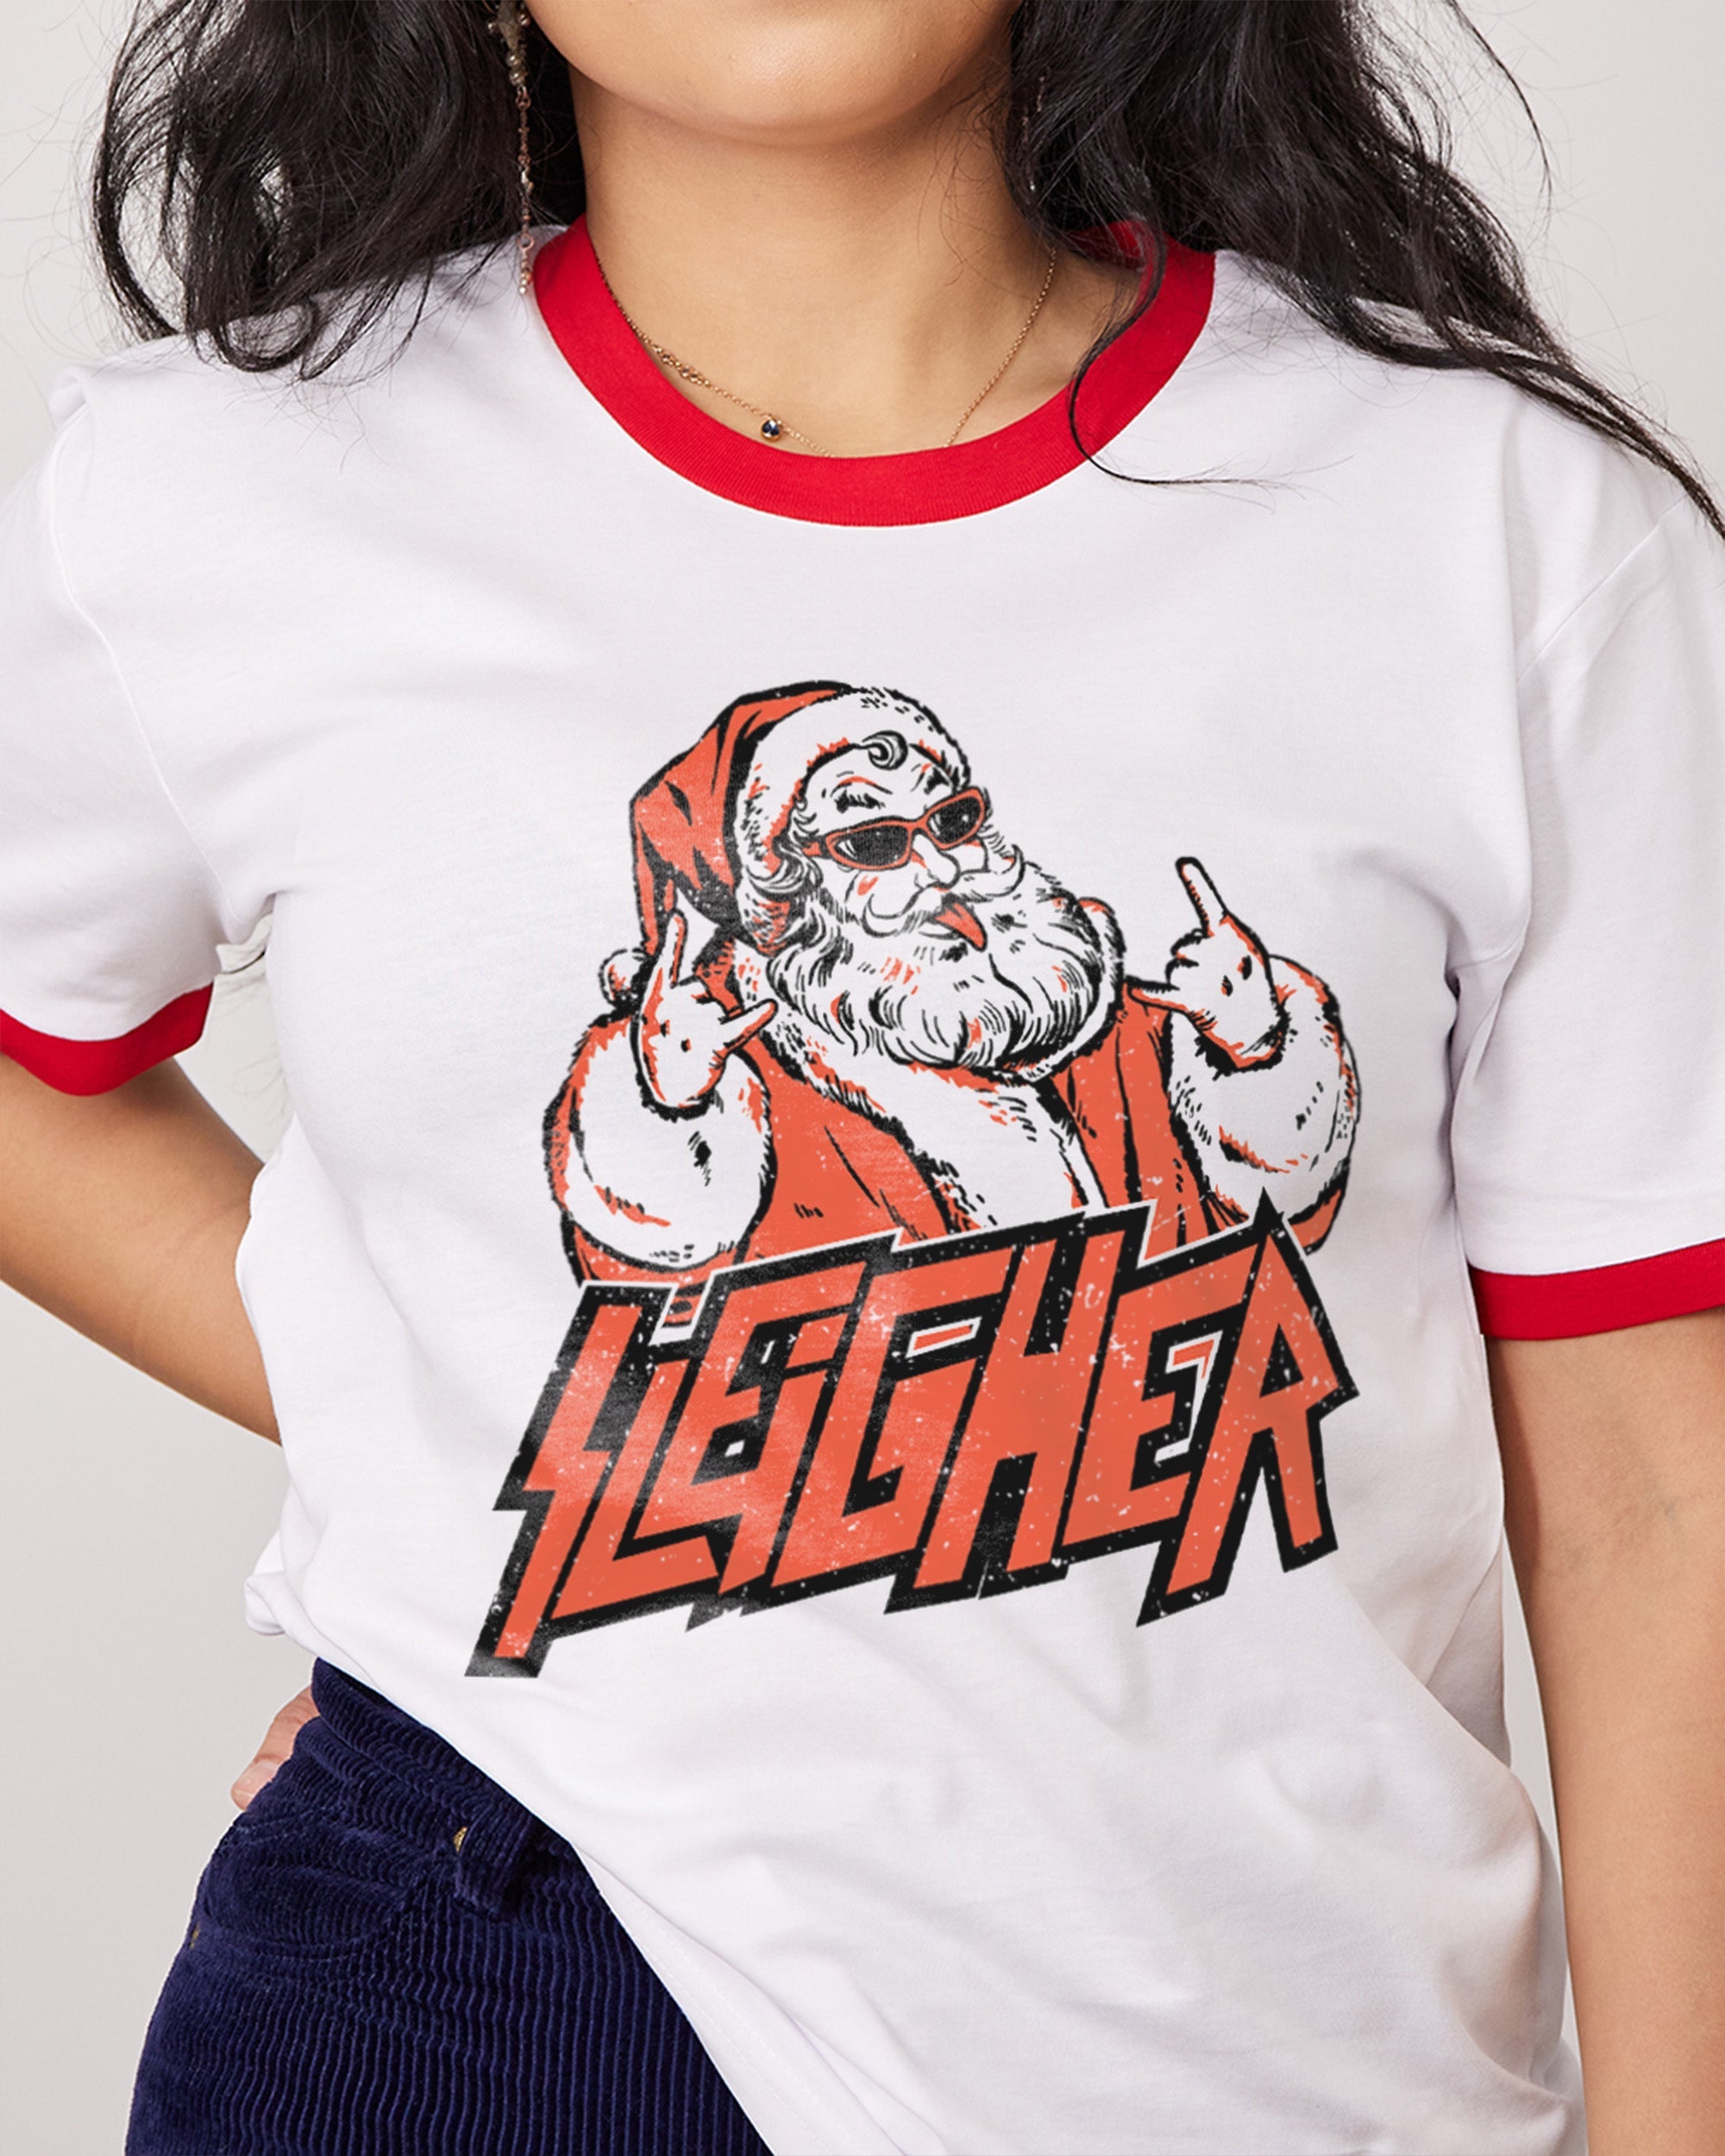 Santa Sleigher T-Shirt Australia Online Red Ringer